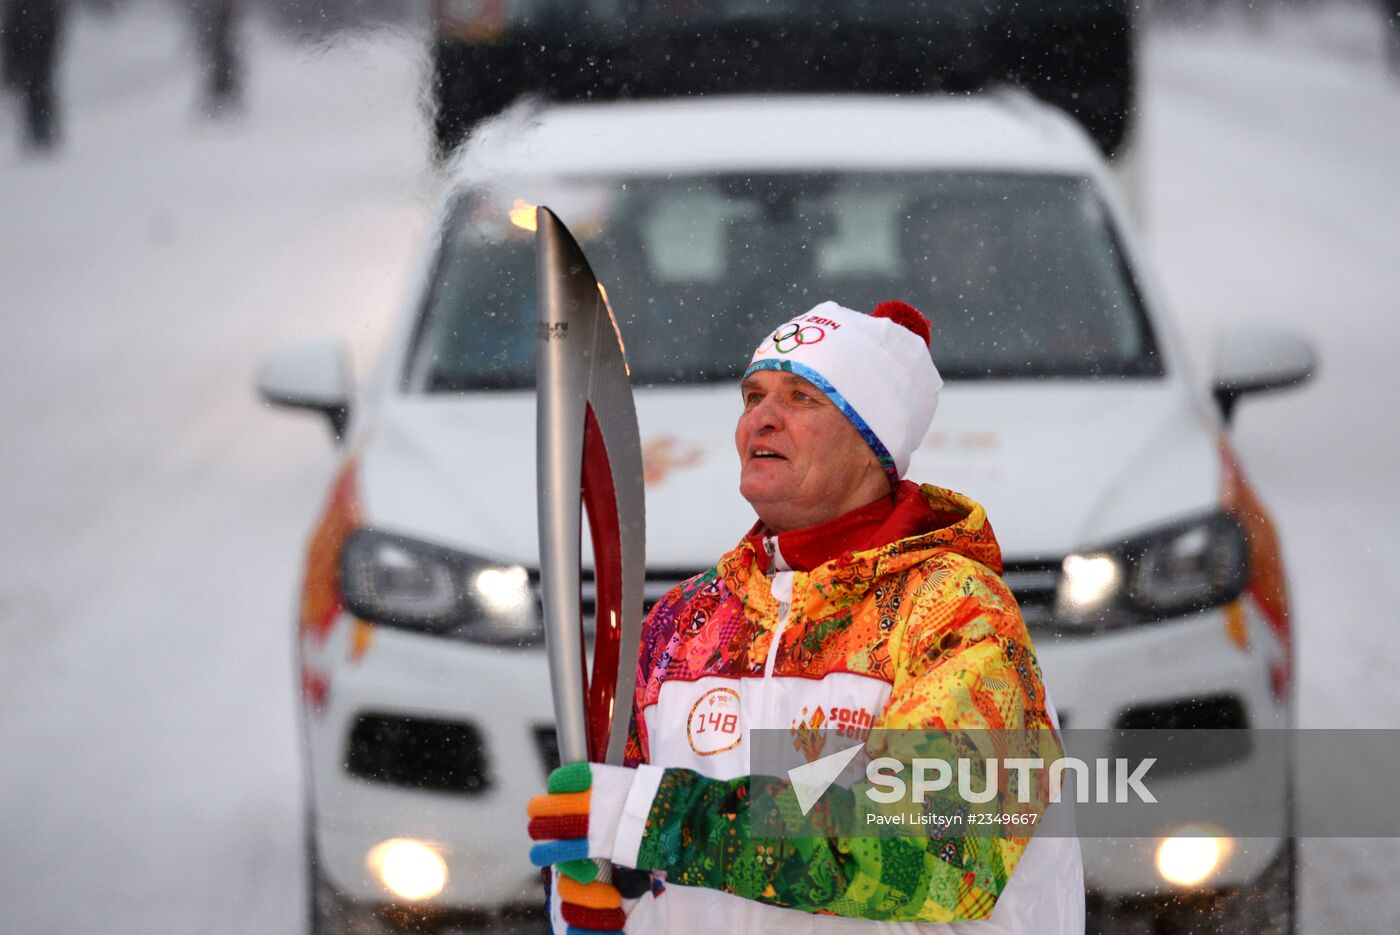 Sochi 2014 Olympic torch relay. Voronezh